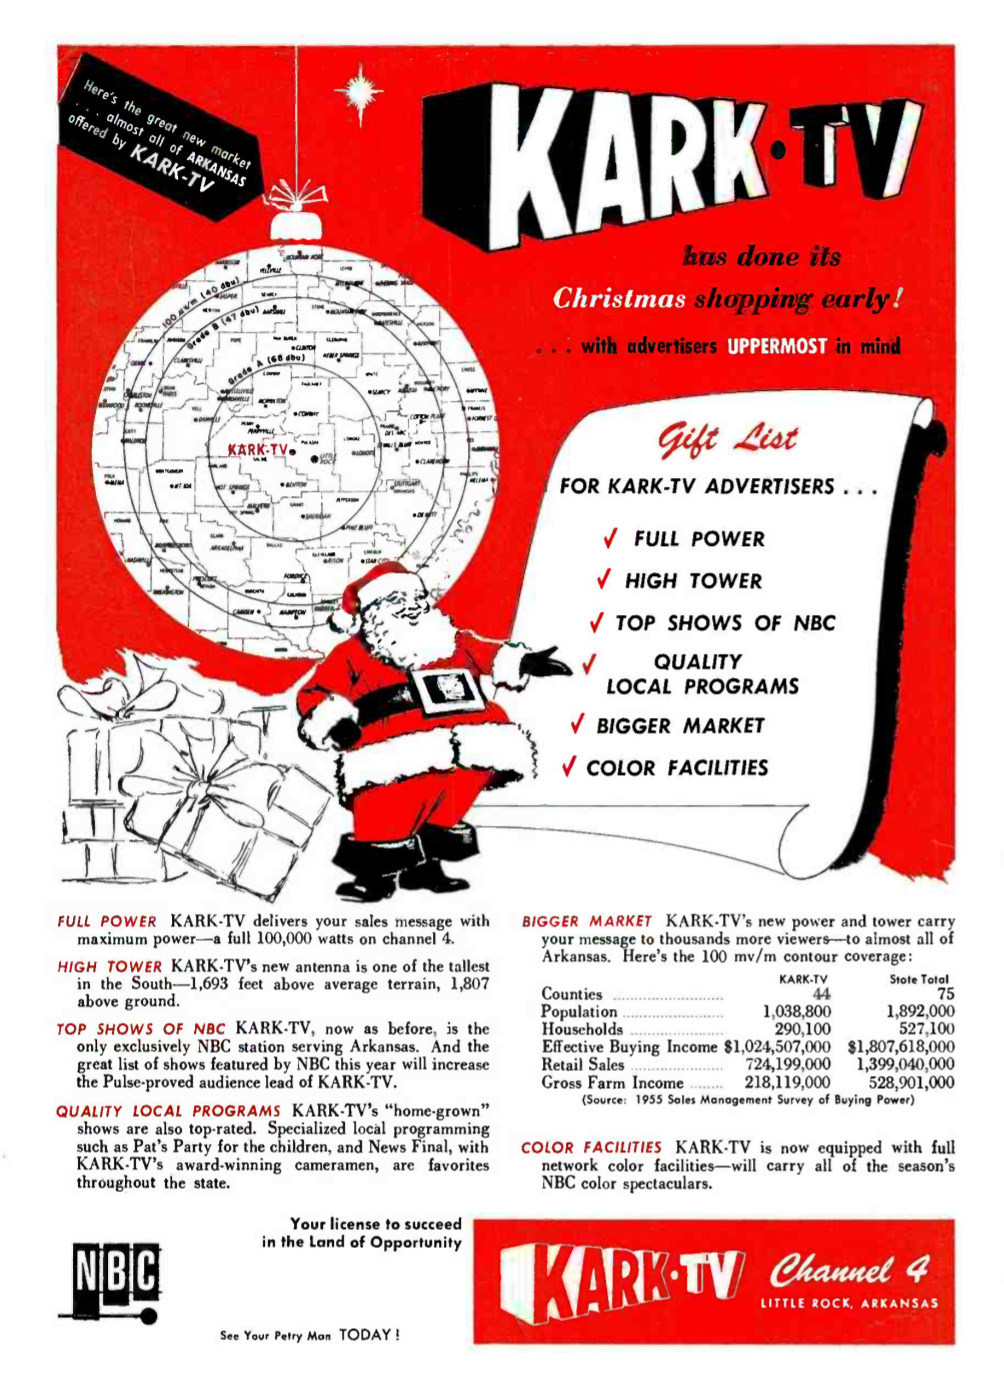 KARK-TV - Little Rock, Arkansas U.S.A. - 1955